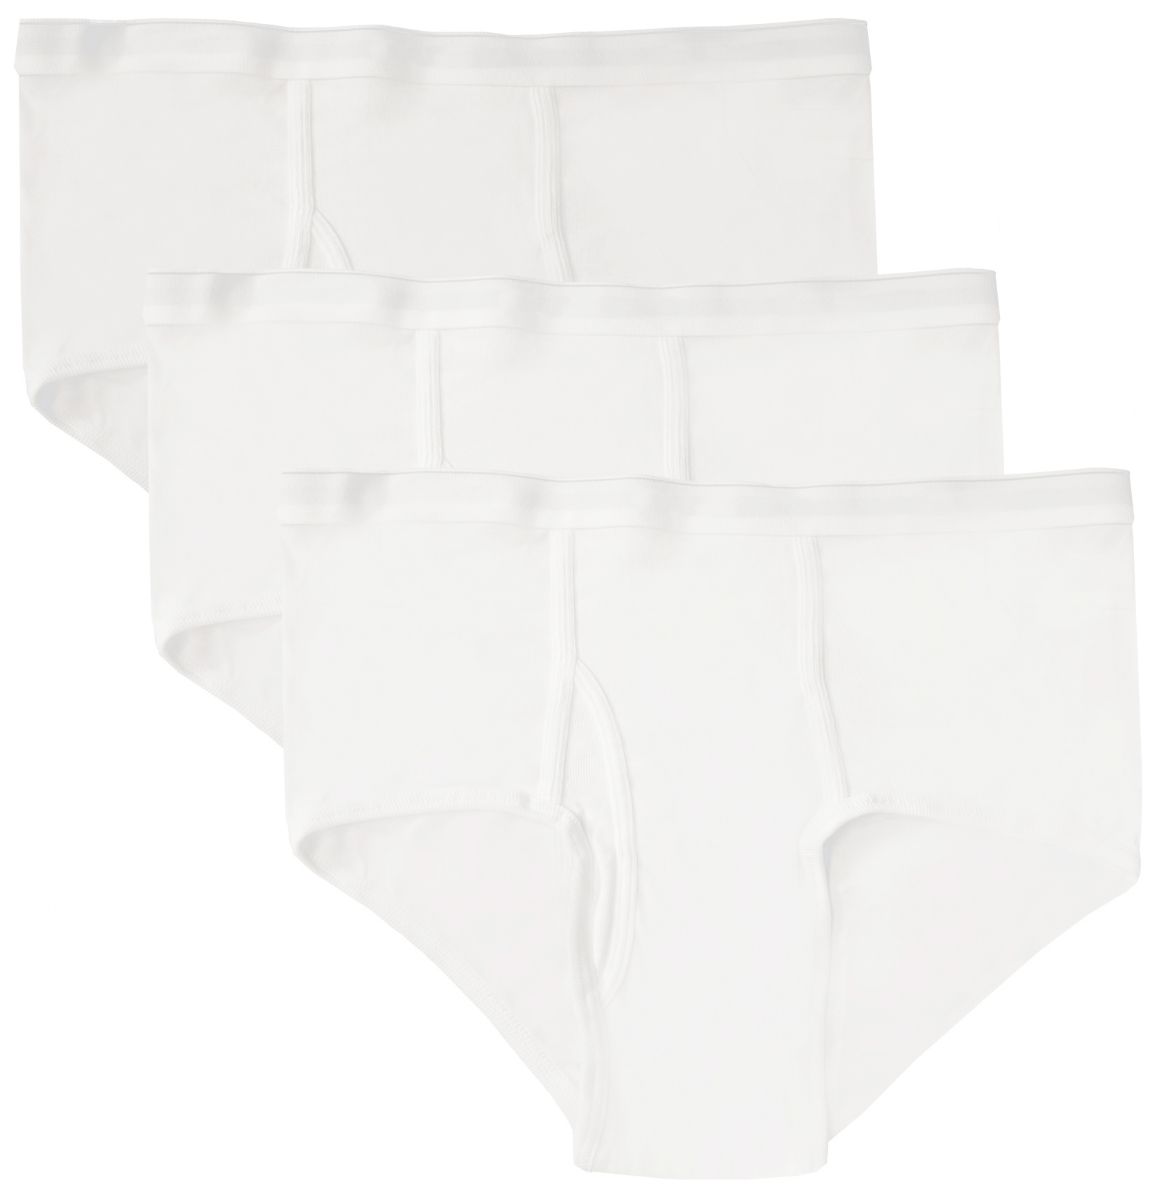 12 Pieces Boys Cotton Underwear Briefs In White, Size M - Boys Underwear -  at 